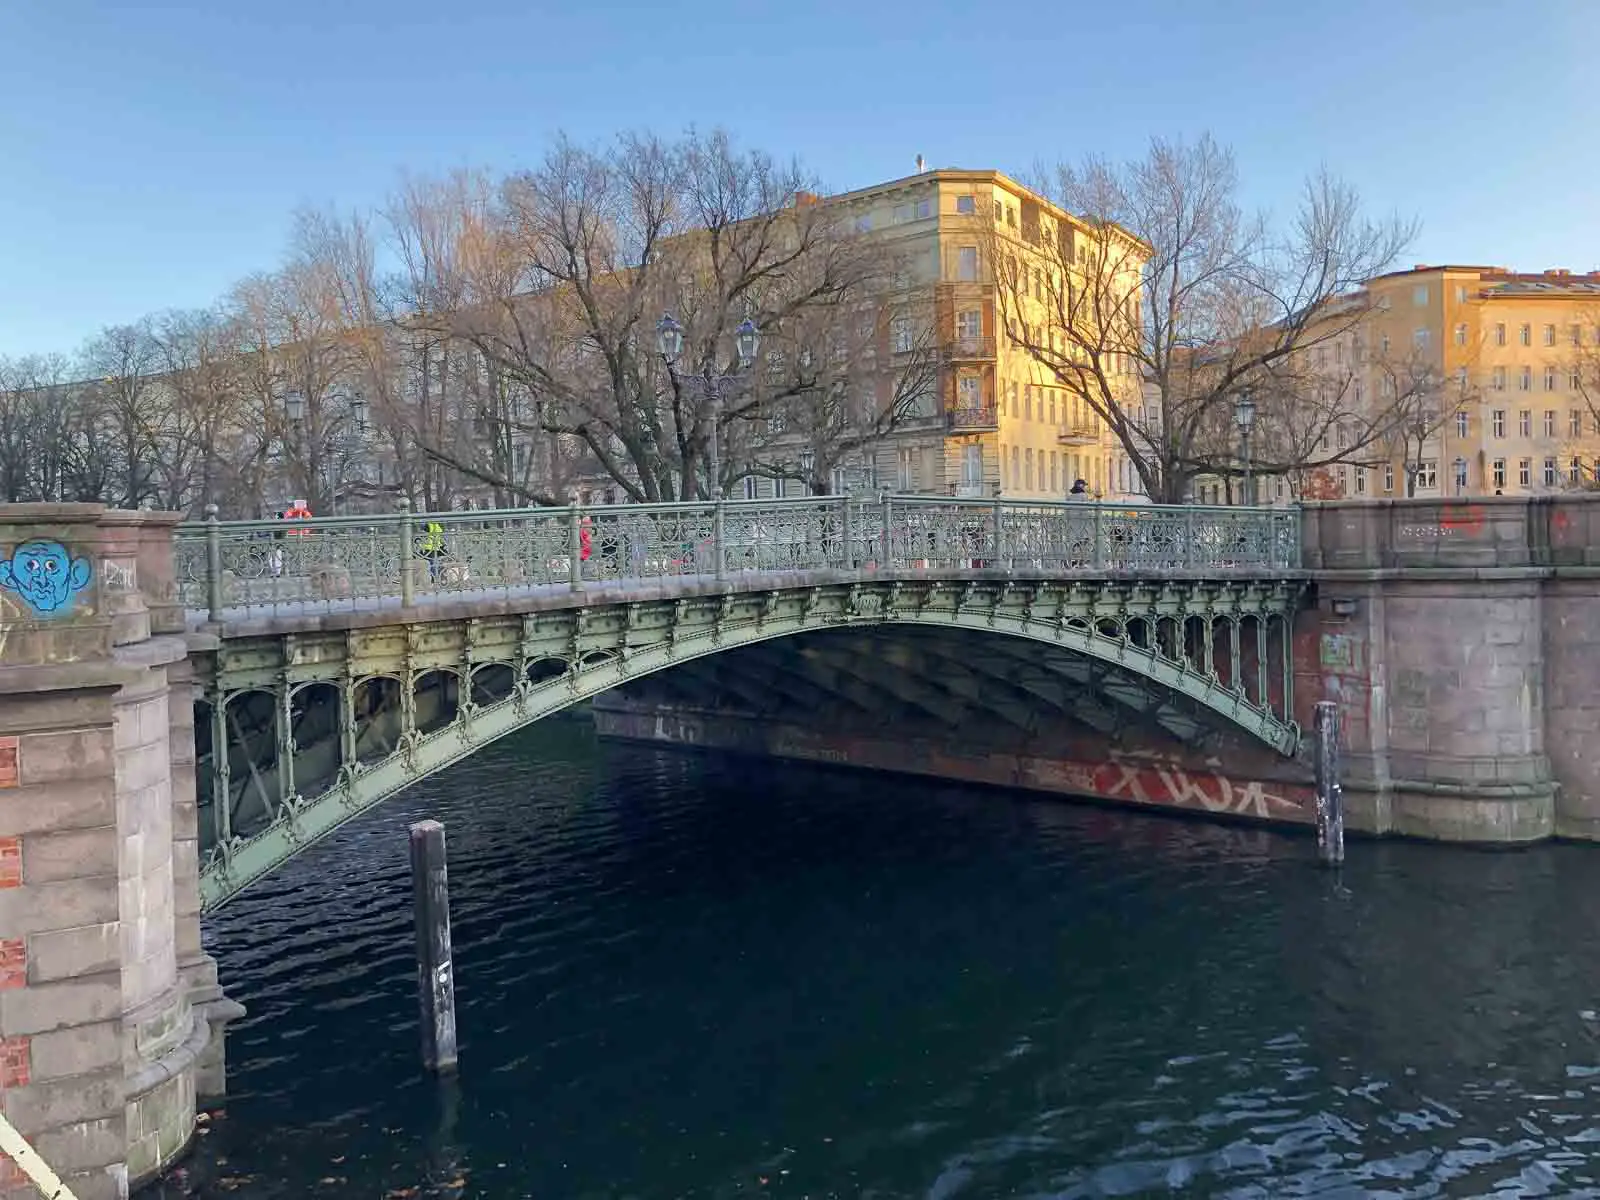 Brücke und Altbauten in Kreuzberg am Landwehrkanal